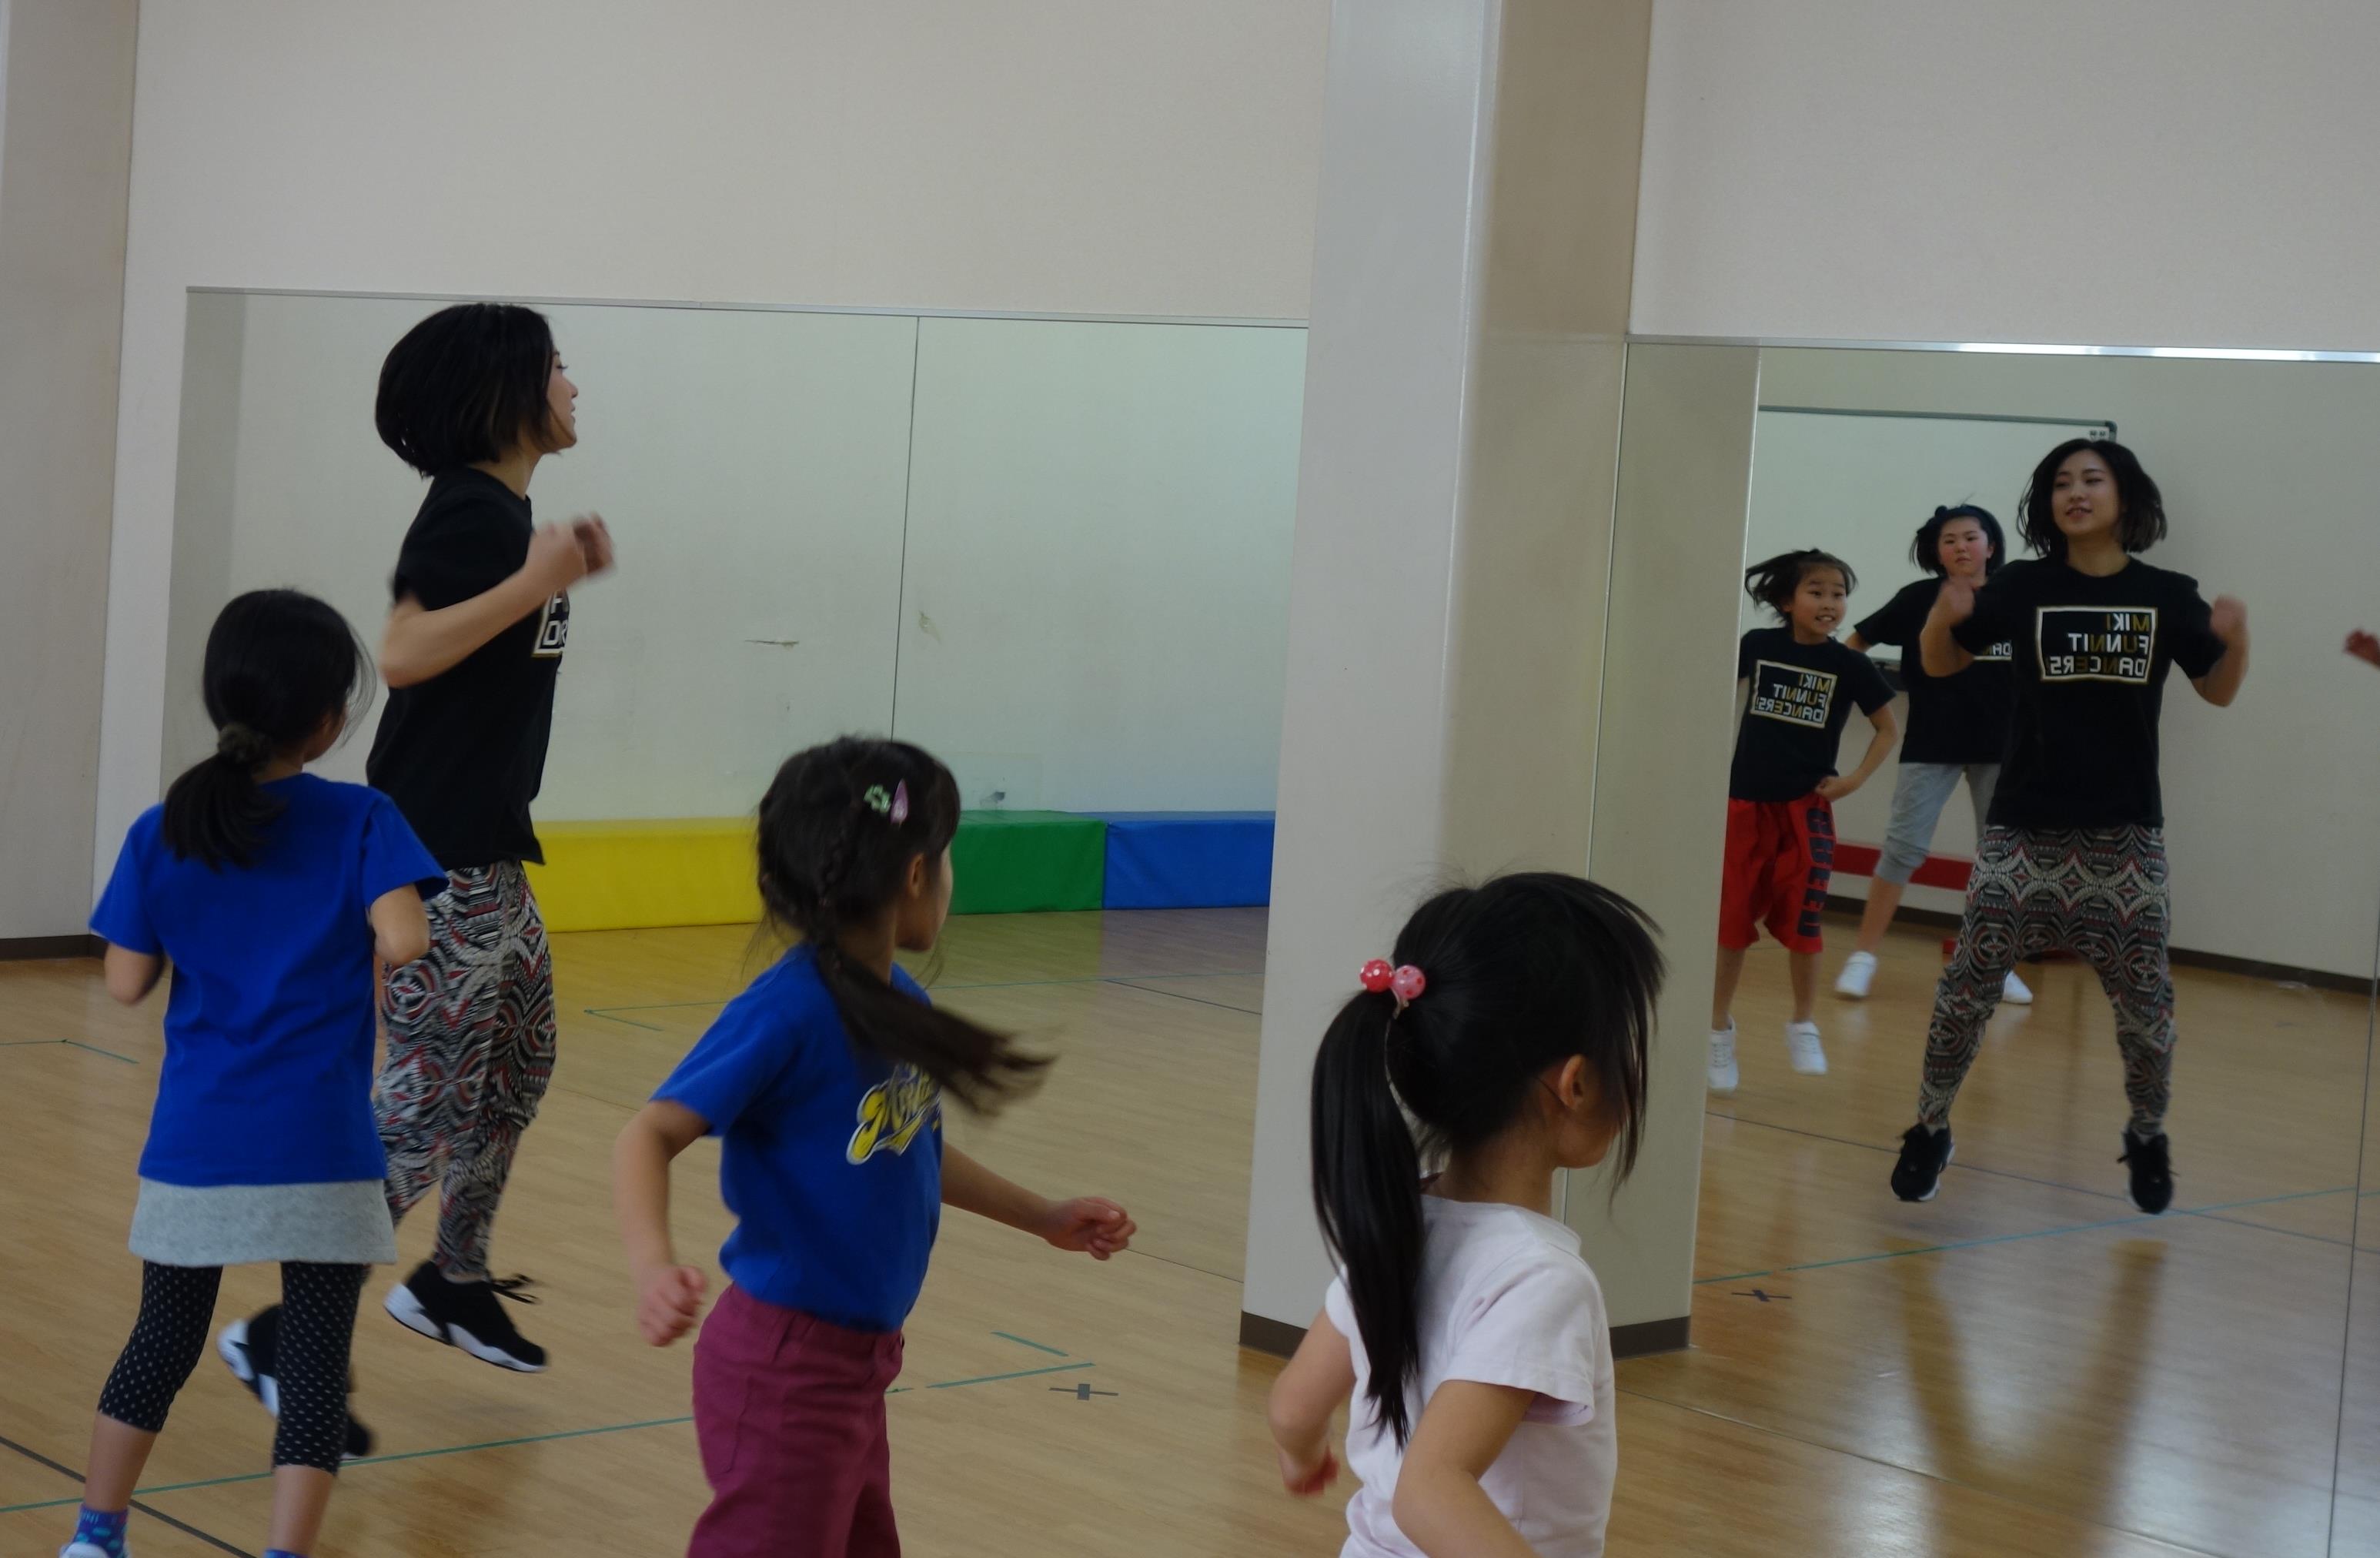 土曜日 Jazzヒップホップクラス Miki ファニット 福岡のダンス 運動教室です 講演や研修もお気軽にお問合せください